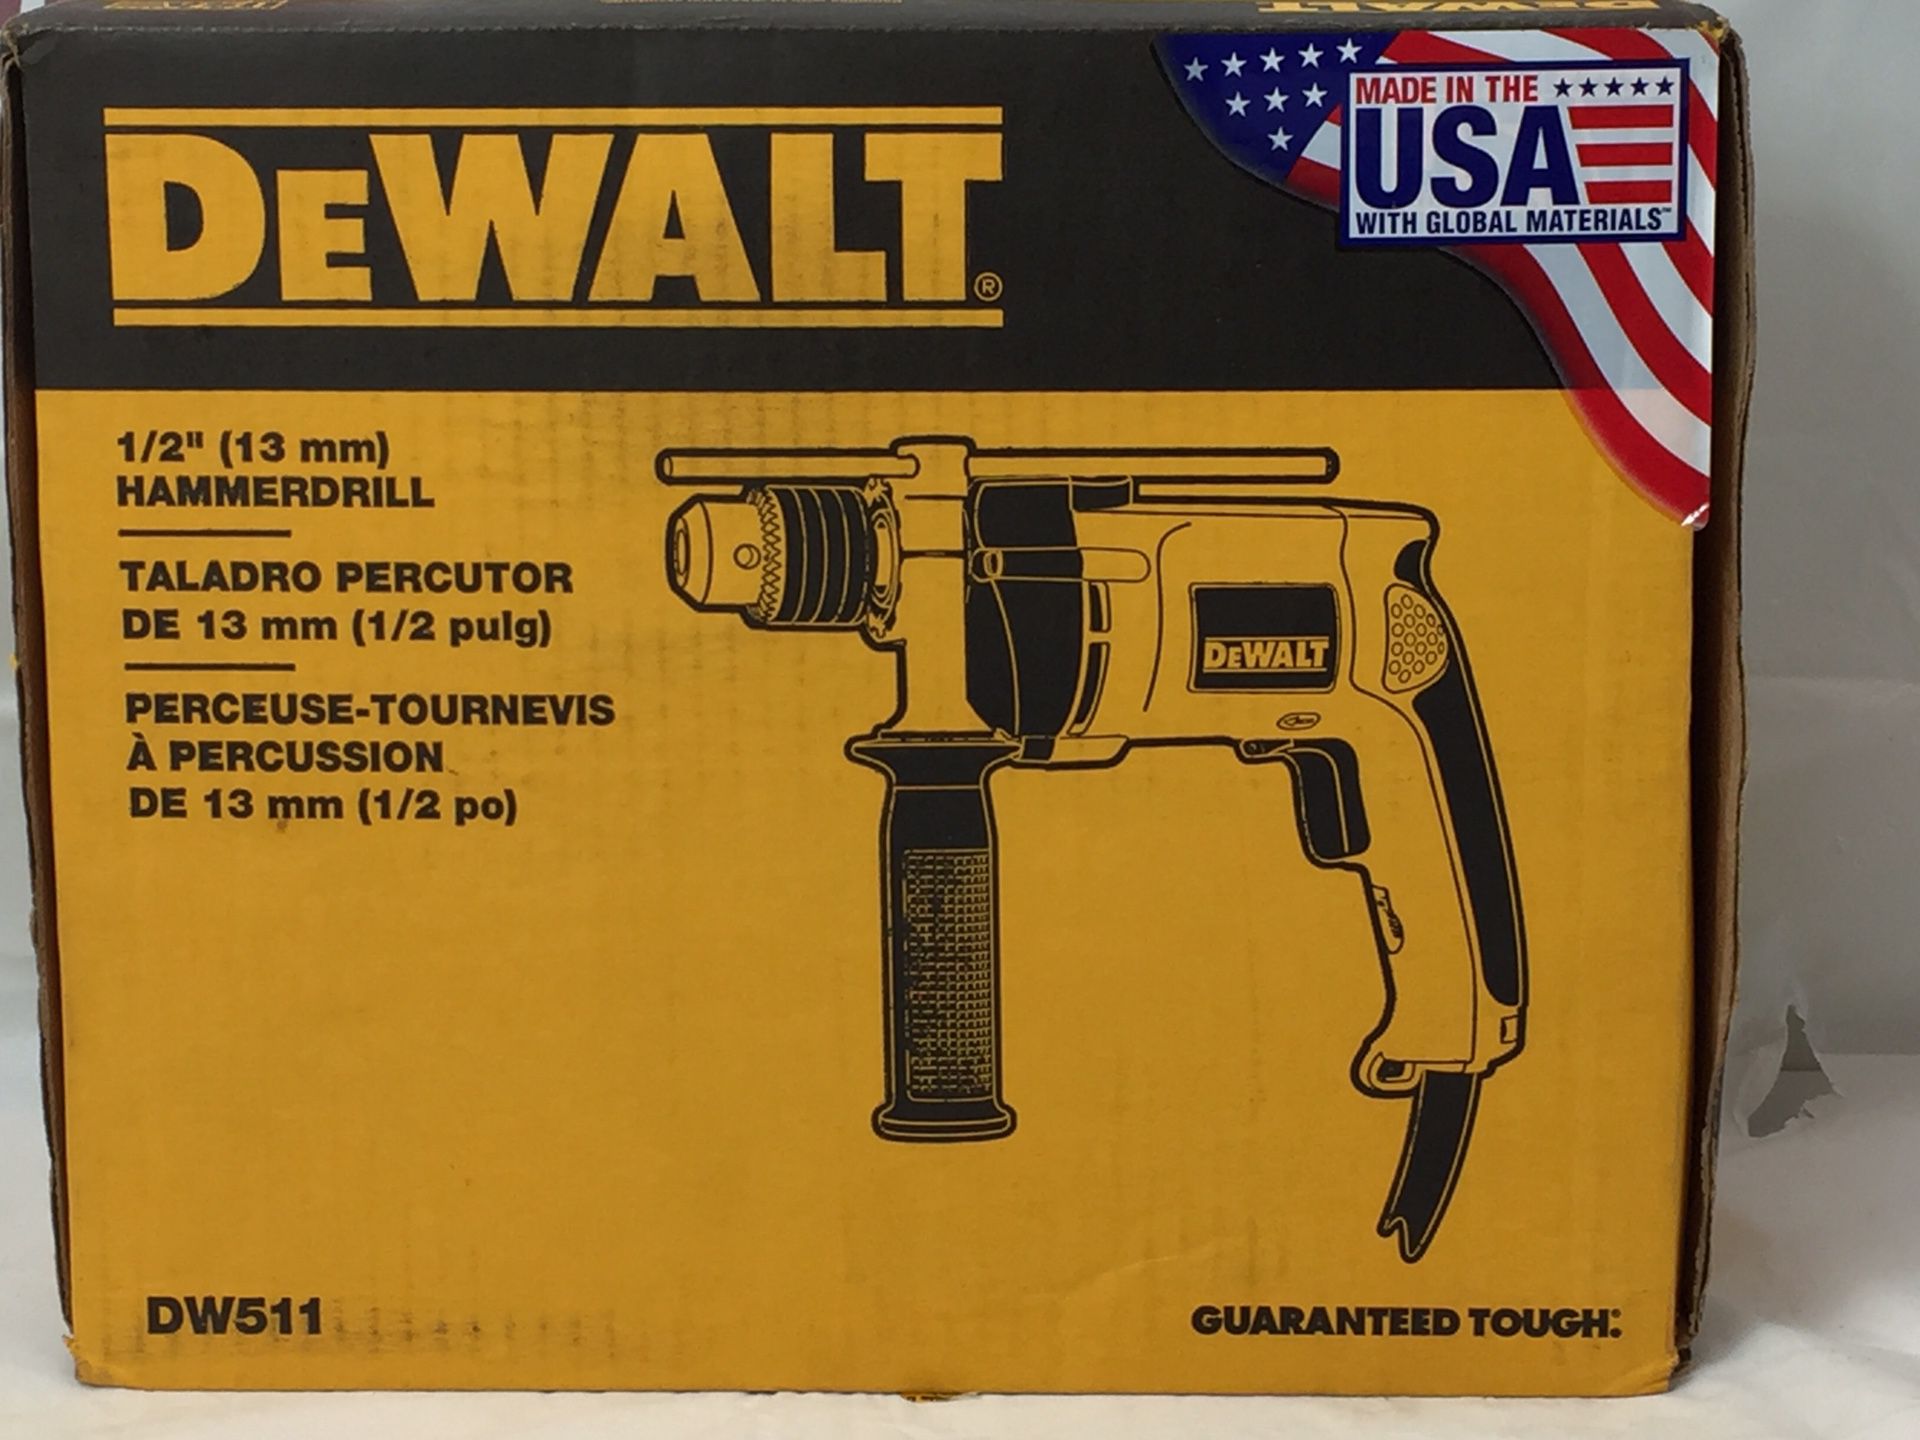 Dewalt DW511 - 1/2” Hammer Drill (MXP012960)